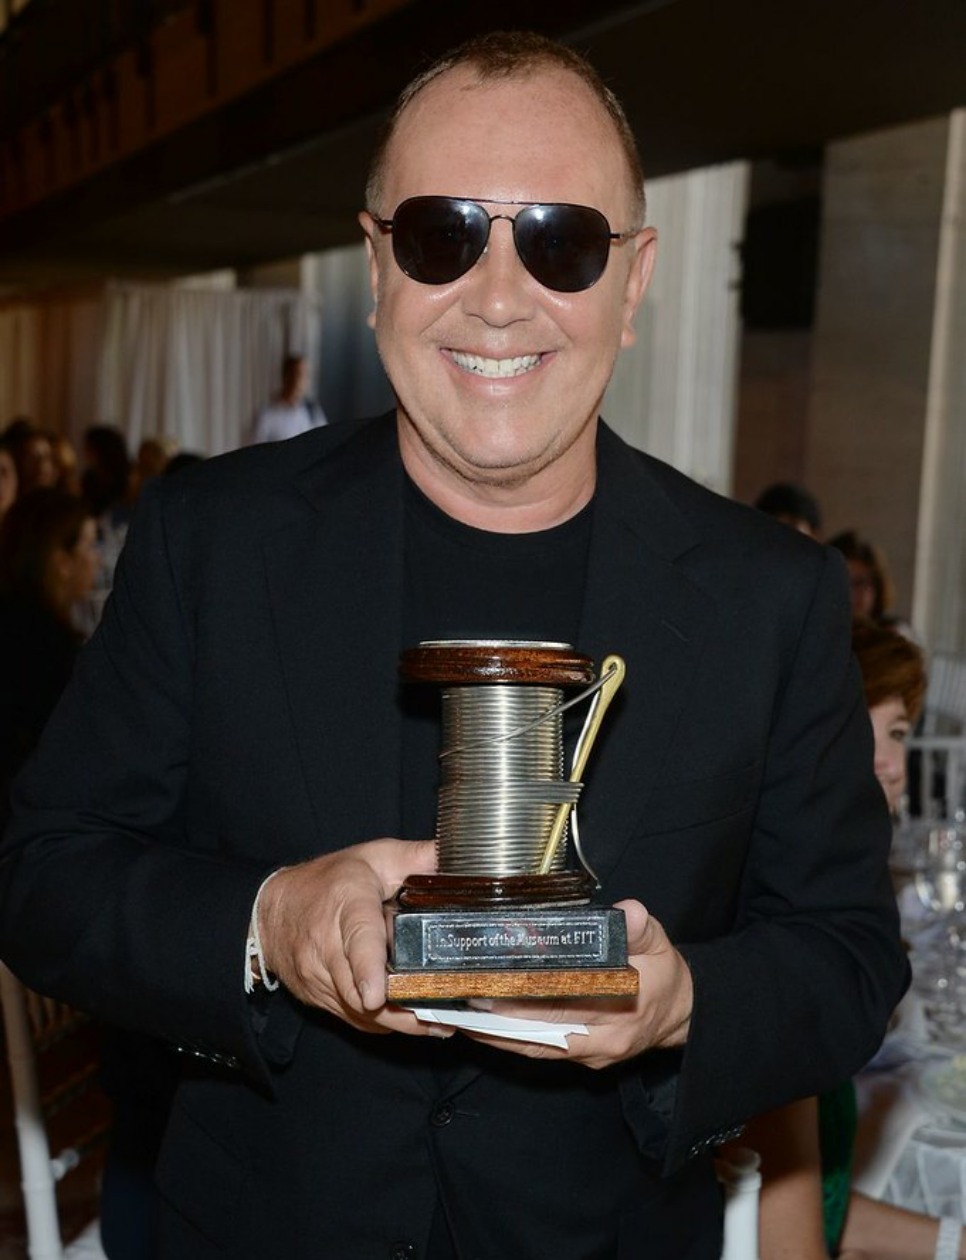 Michael Kors juga menerima penghargaan The Couture Council Award for Artistry of Fashion di tahun 2013